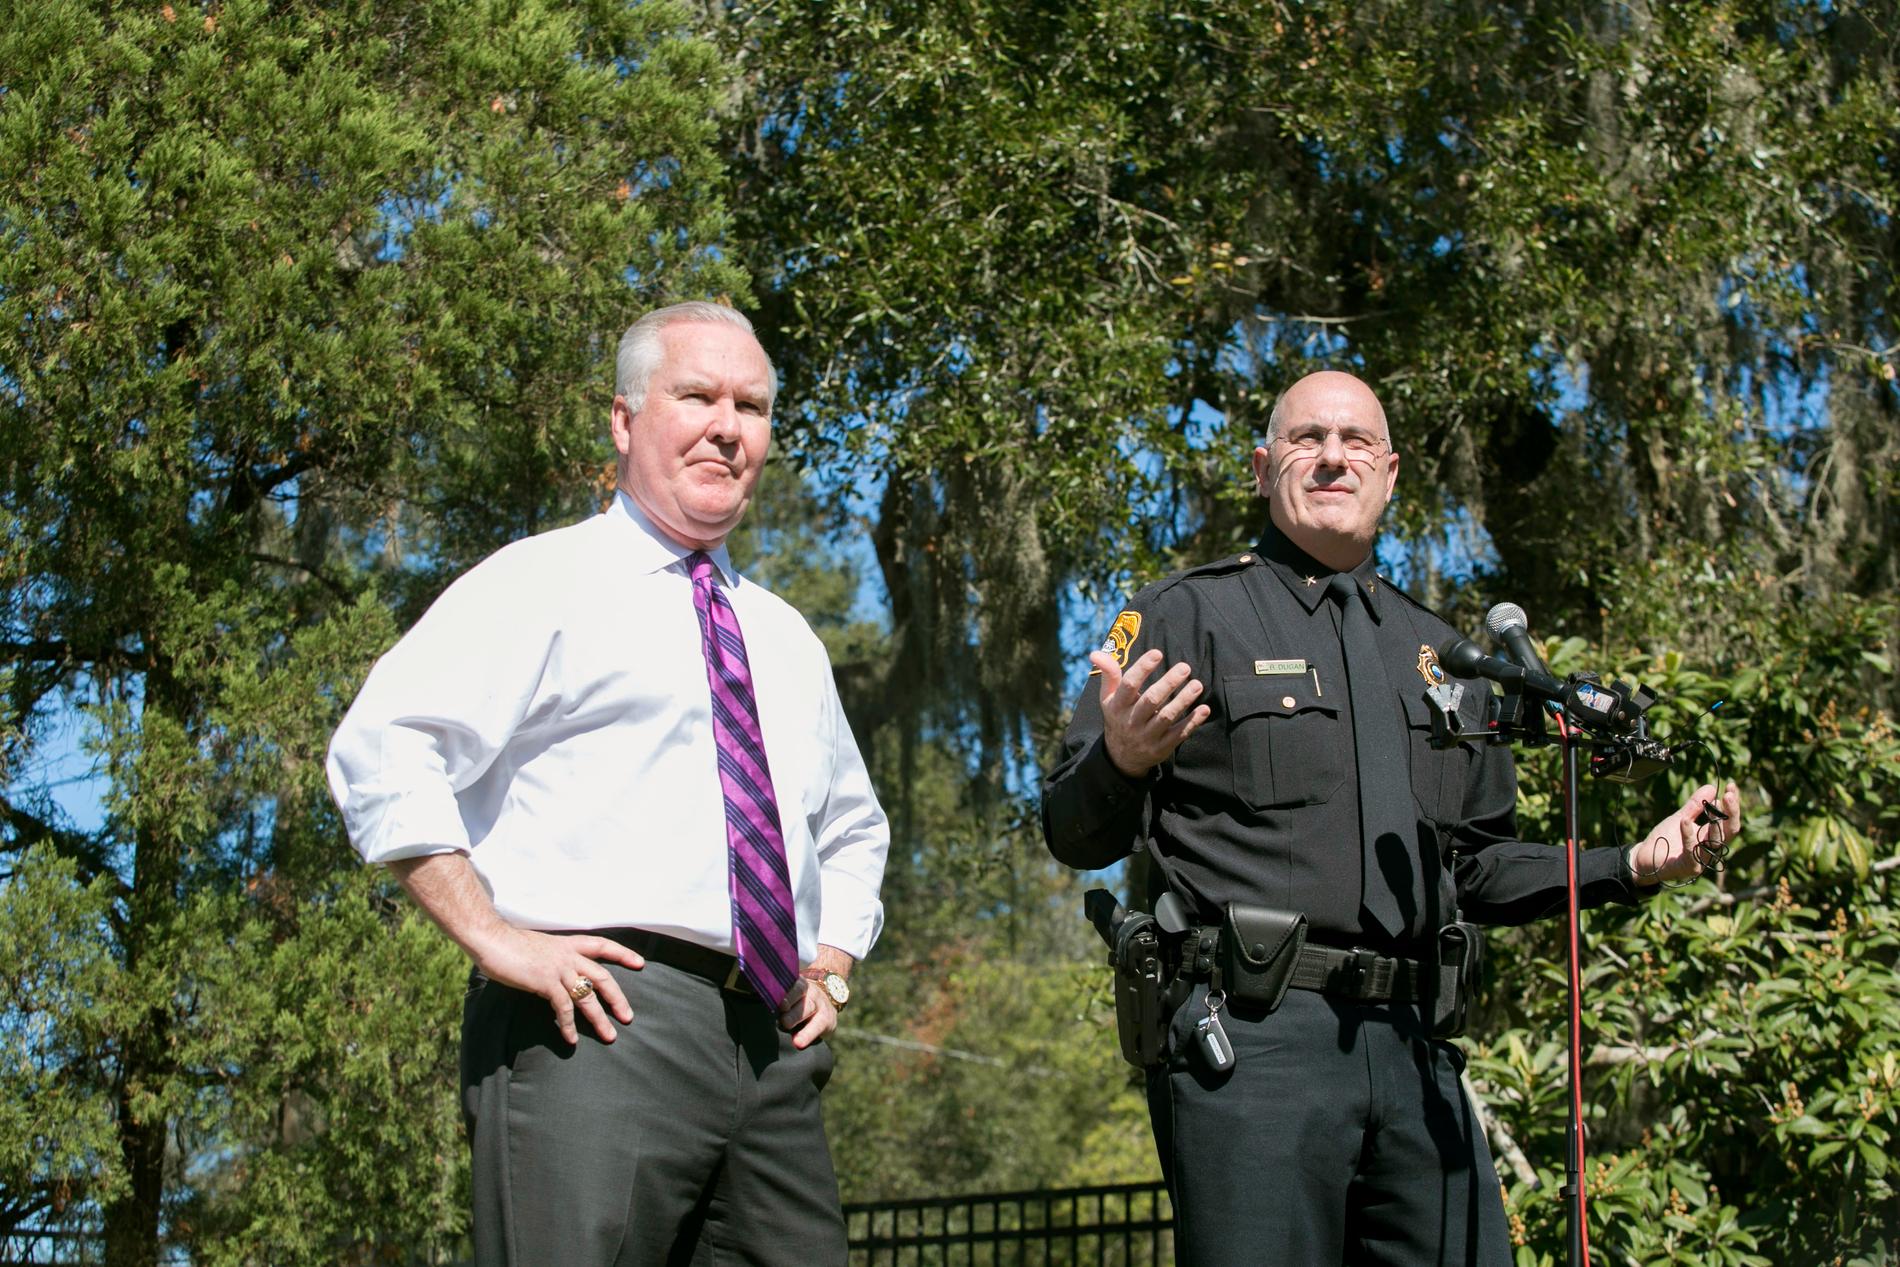 Tampas borgmästare Bob Buckhorn och polischefen Brian Dugan.